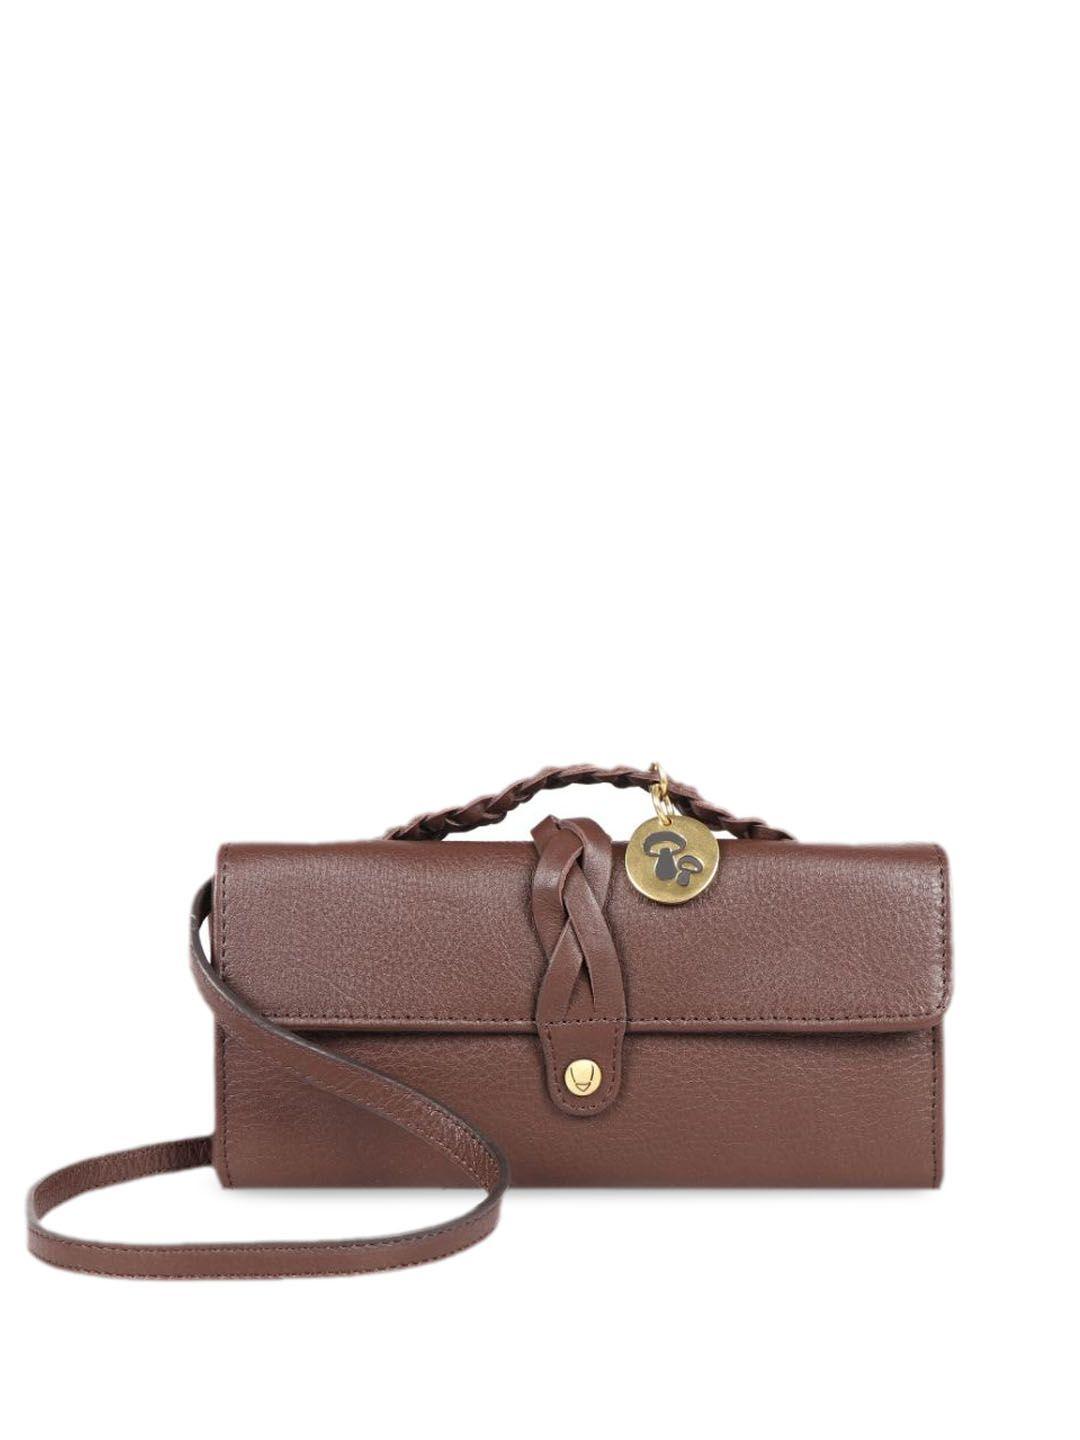 hidesign-brown-purse-clutch